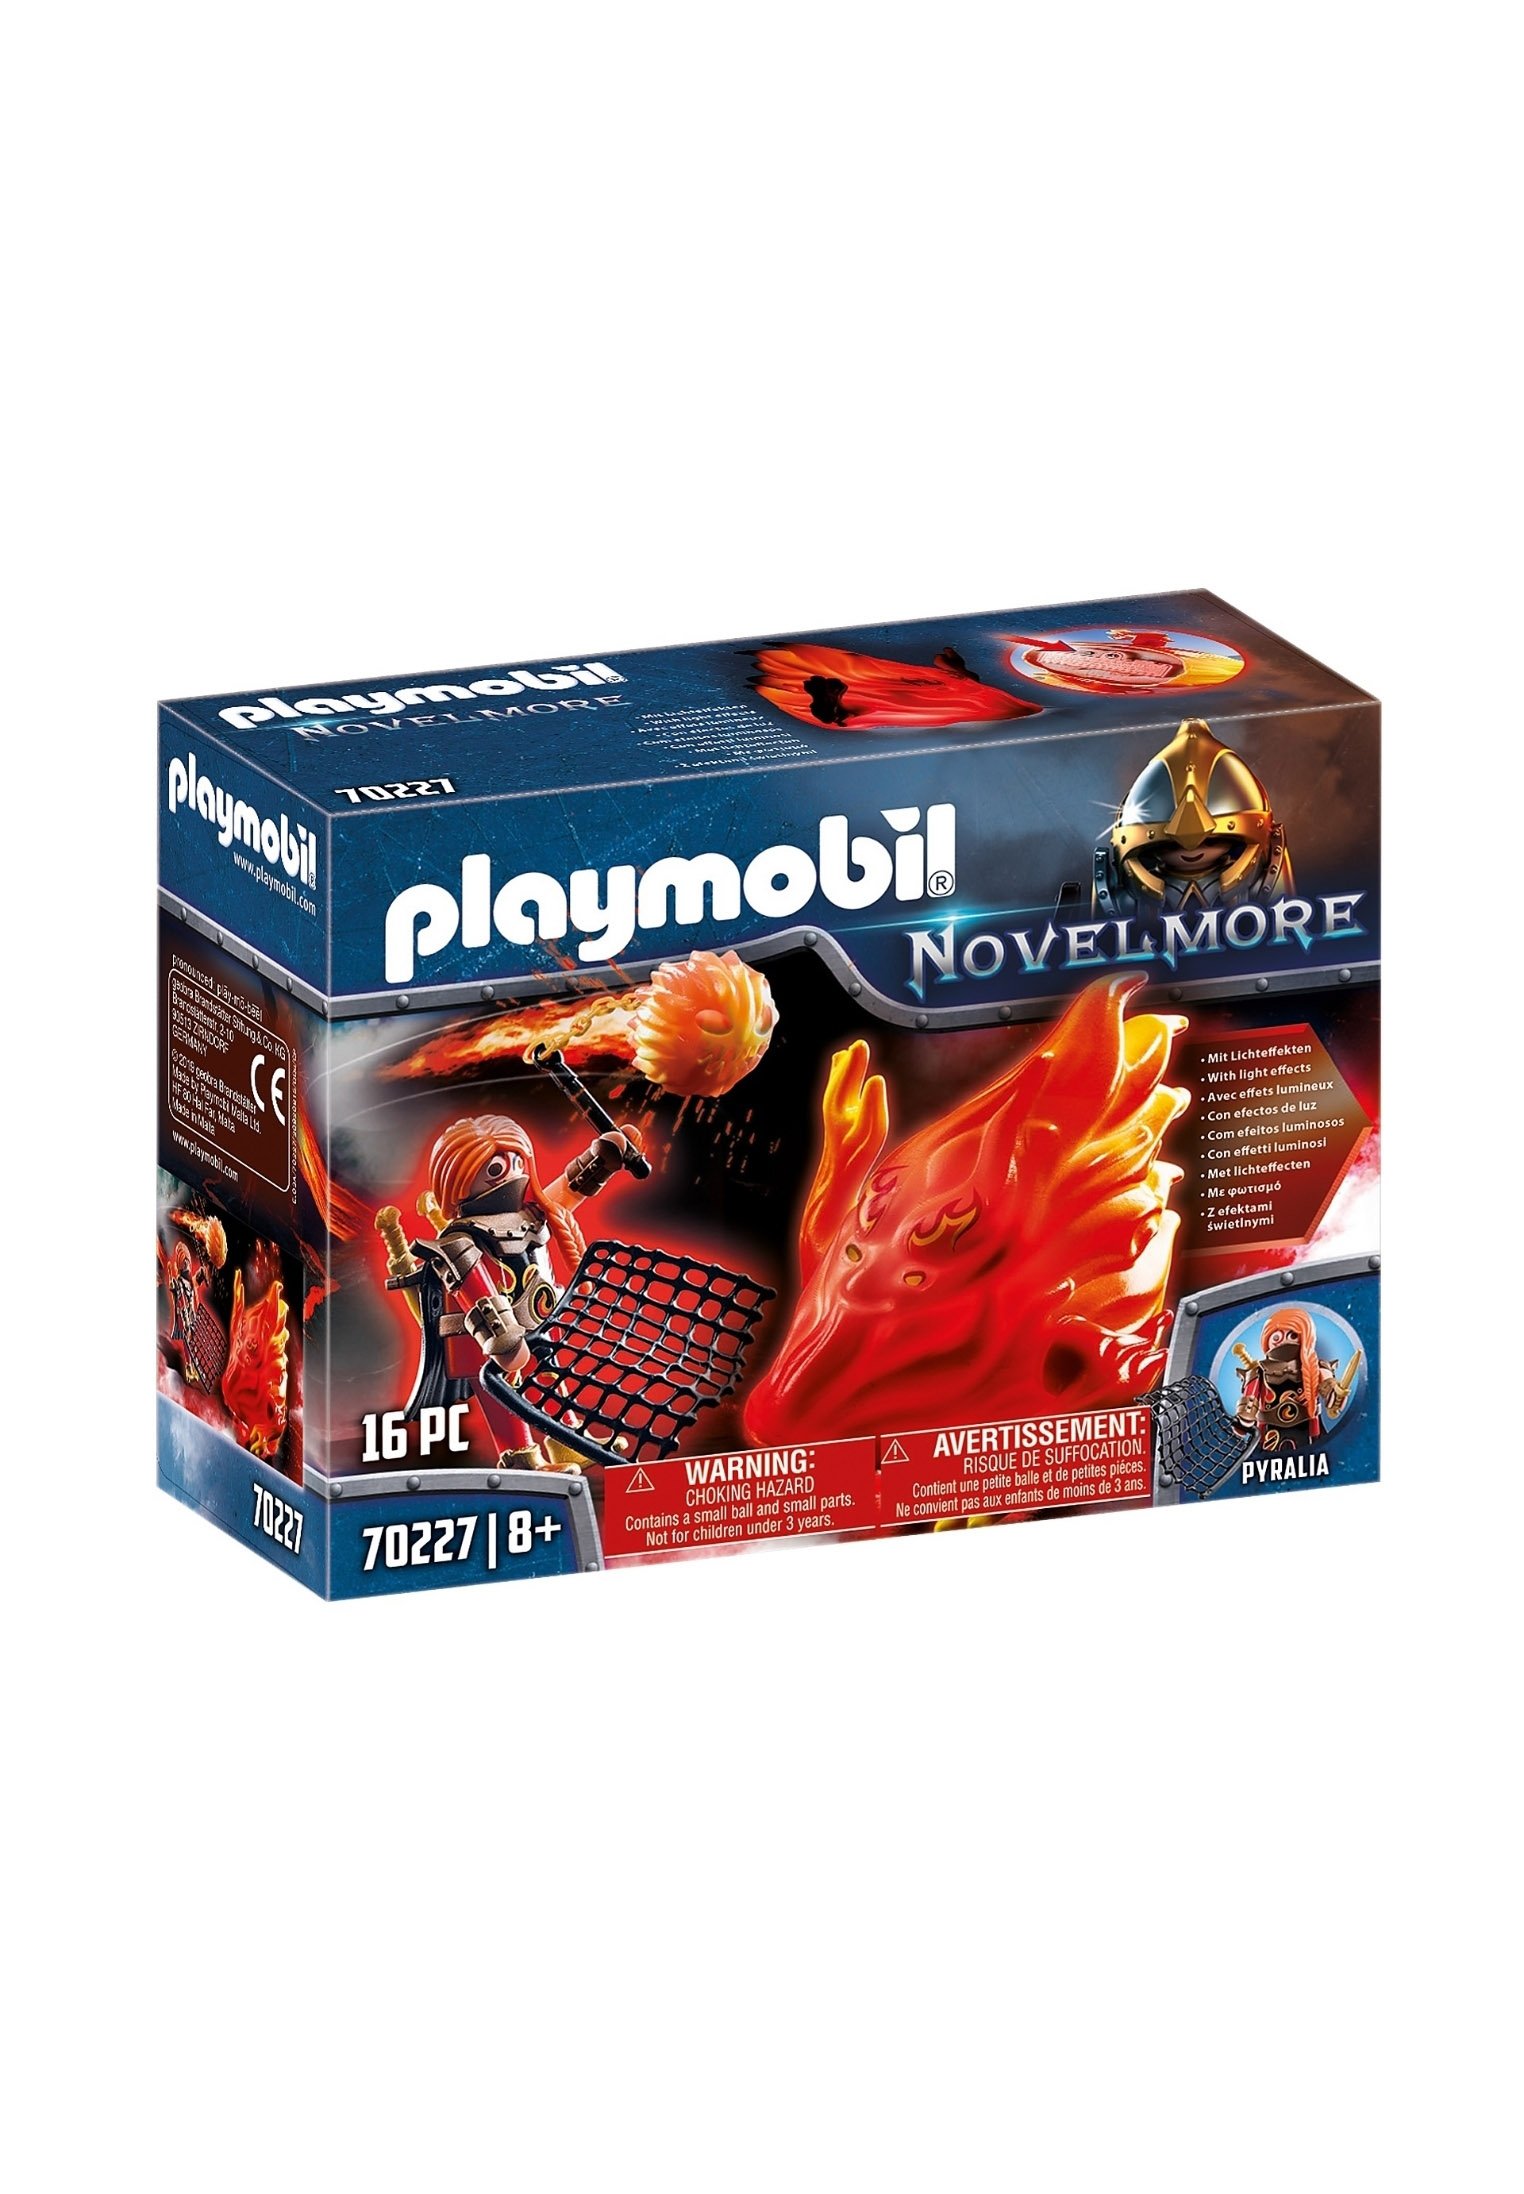 Playmobil NOVELMORE - BURNHAM RAIDERS VUURGEEST - Spielzeug - multicolor/mehrfarbig